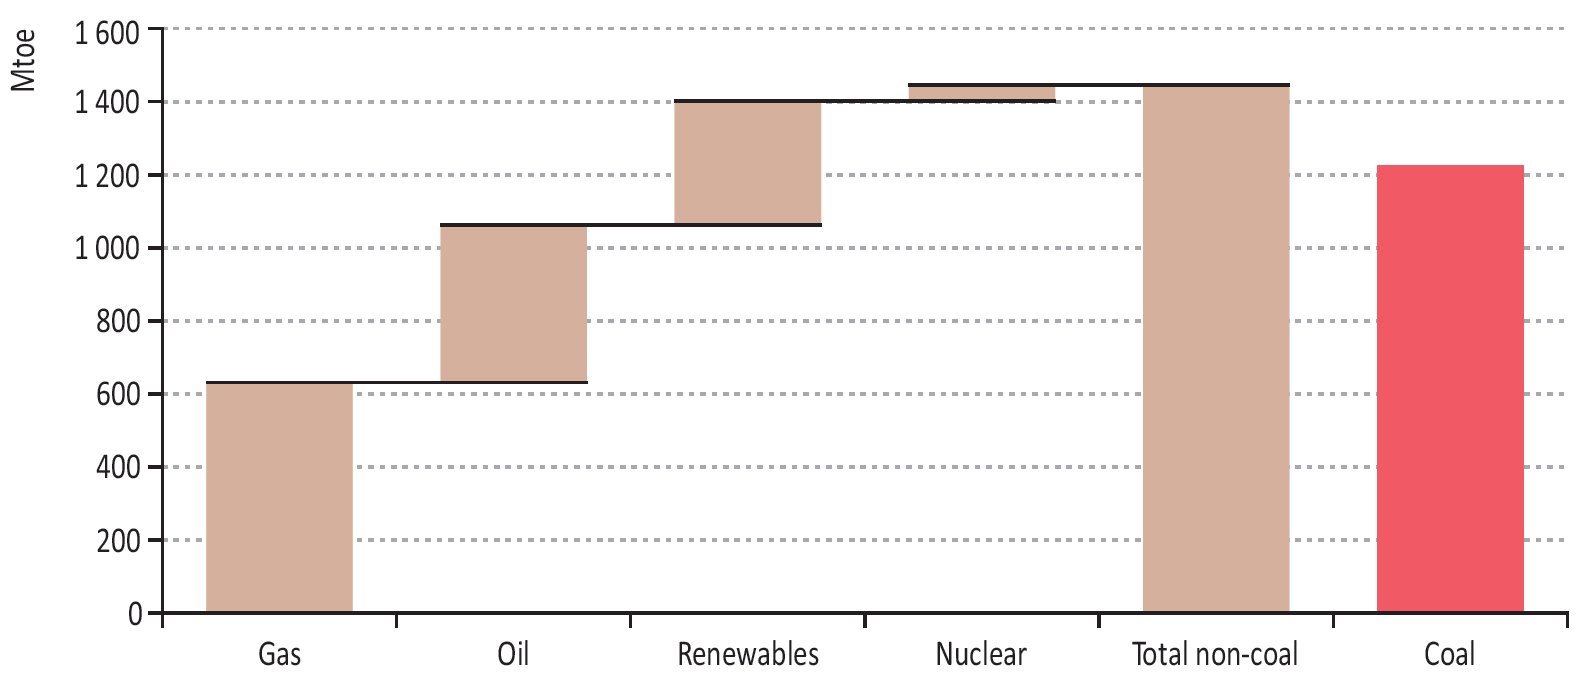 Zuwachs der Primärenergiequellen bei der Weltenergienachfrage 2000-2010 2013: rund